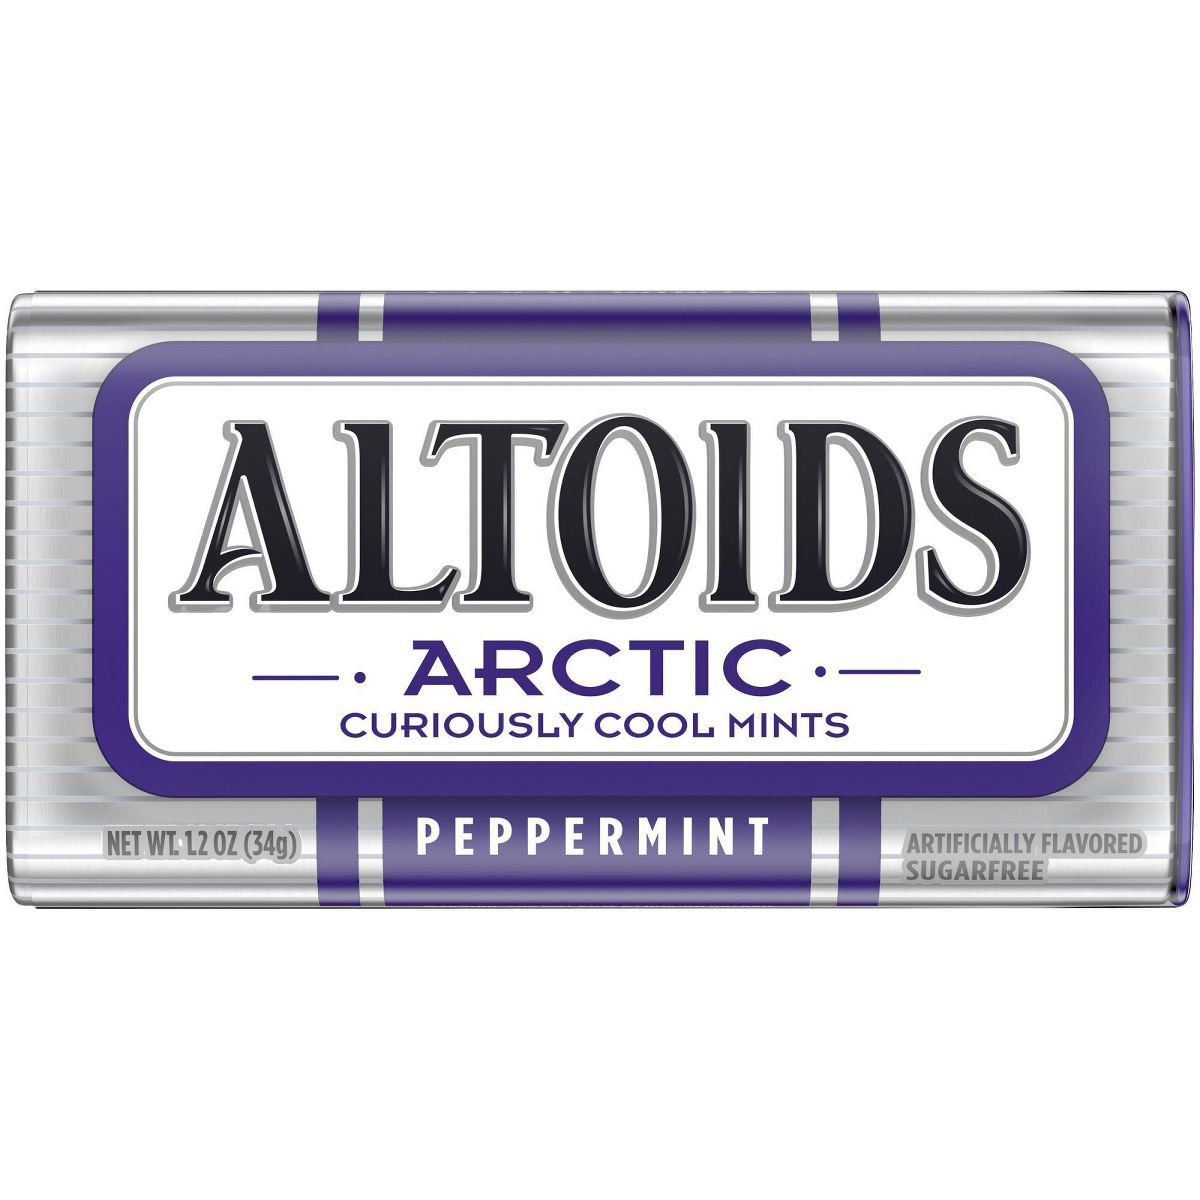 Altoids Arctic Peppermint Mint Candies - 1.2oz | Target